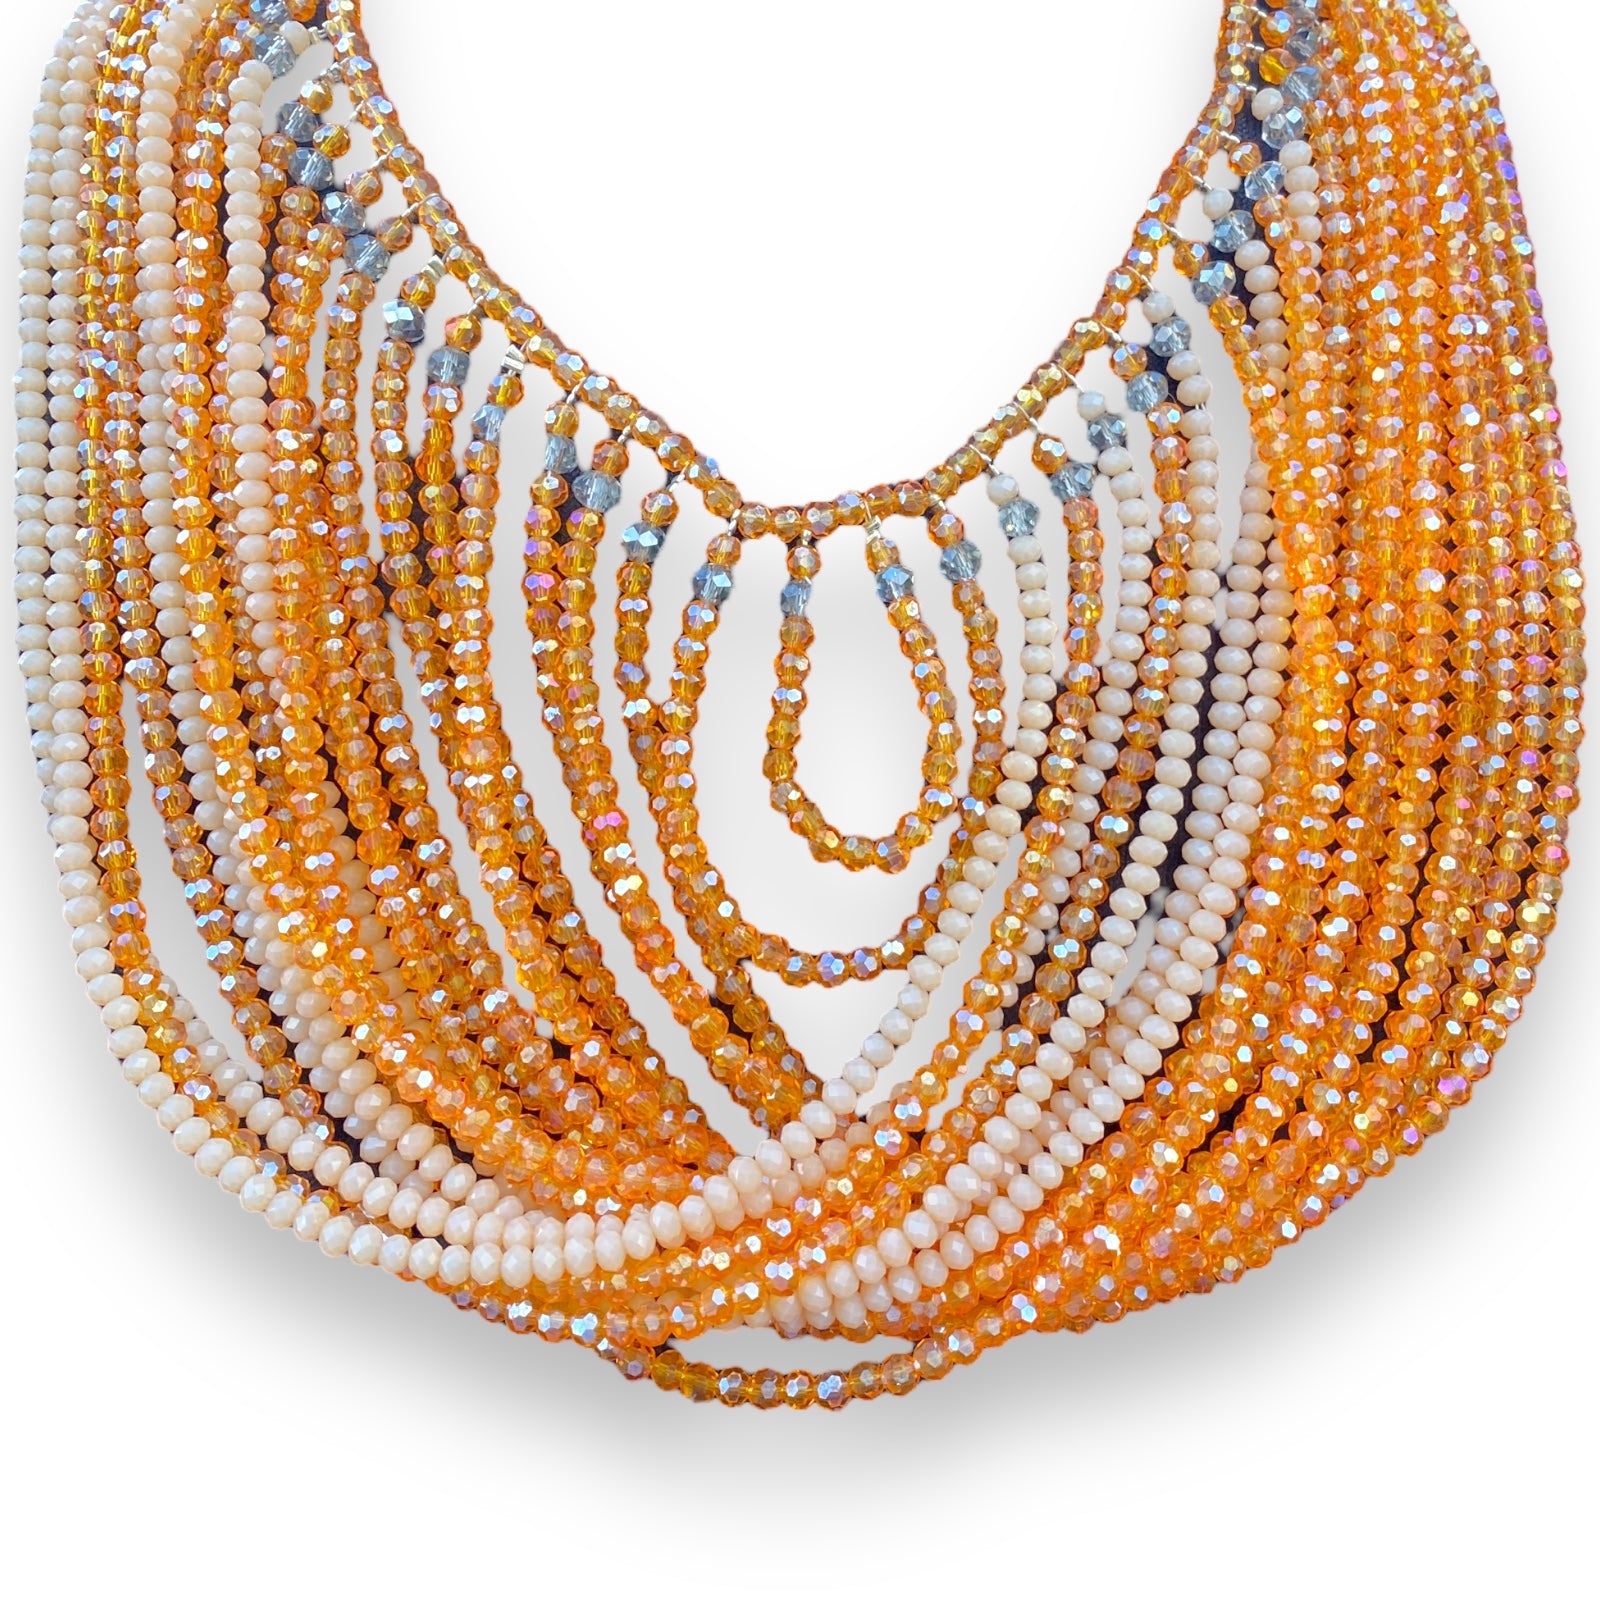 Handmade Waterfall Necklace 19" Orange Layered Beads Jewelry